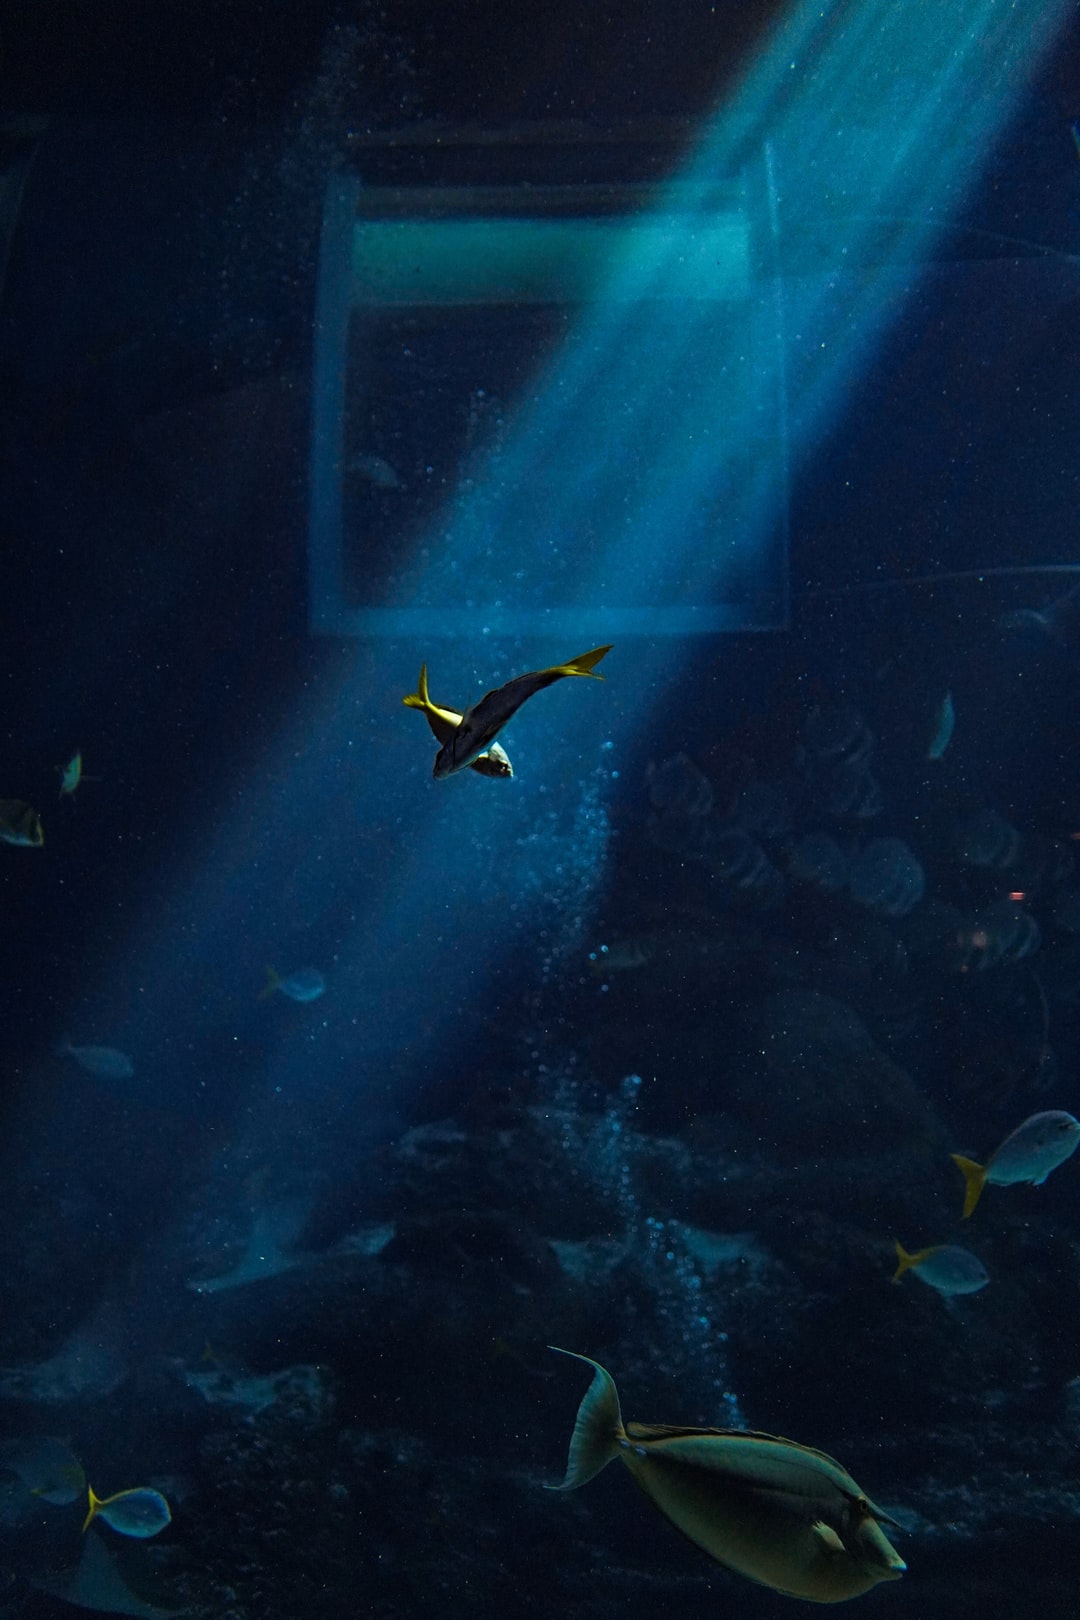 19 wichtige Fragen zu Wann Brauche Ich Eine Co2 Anlage Im Aquarium?